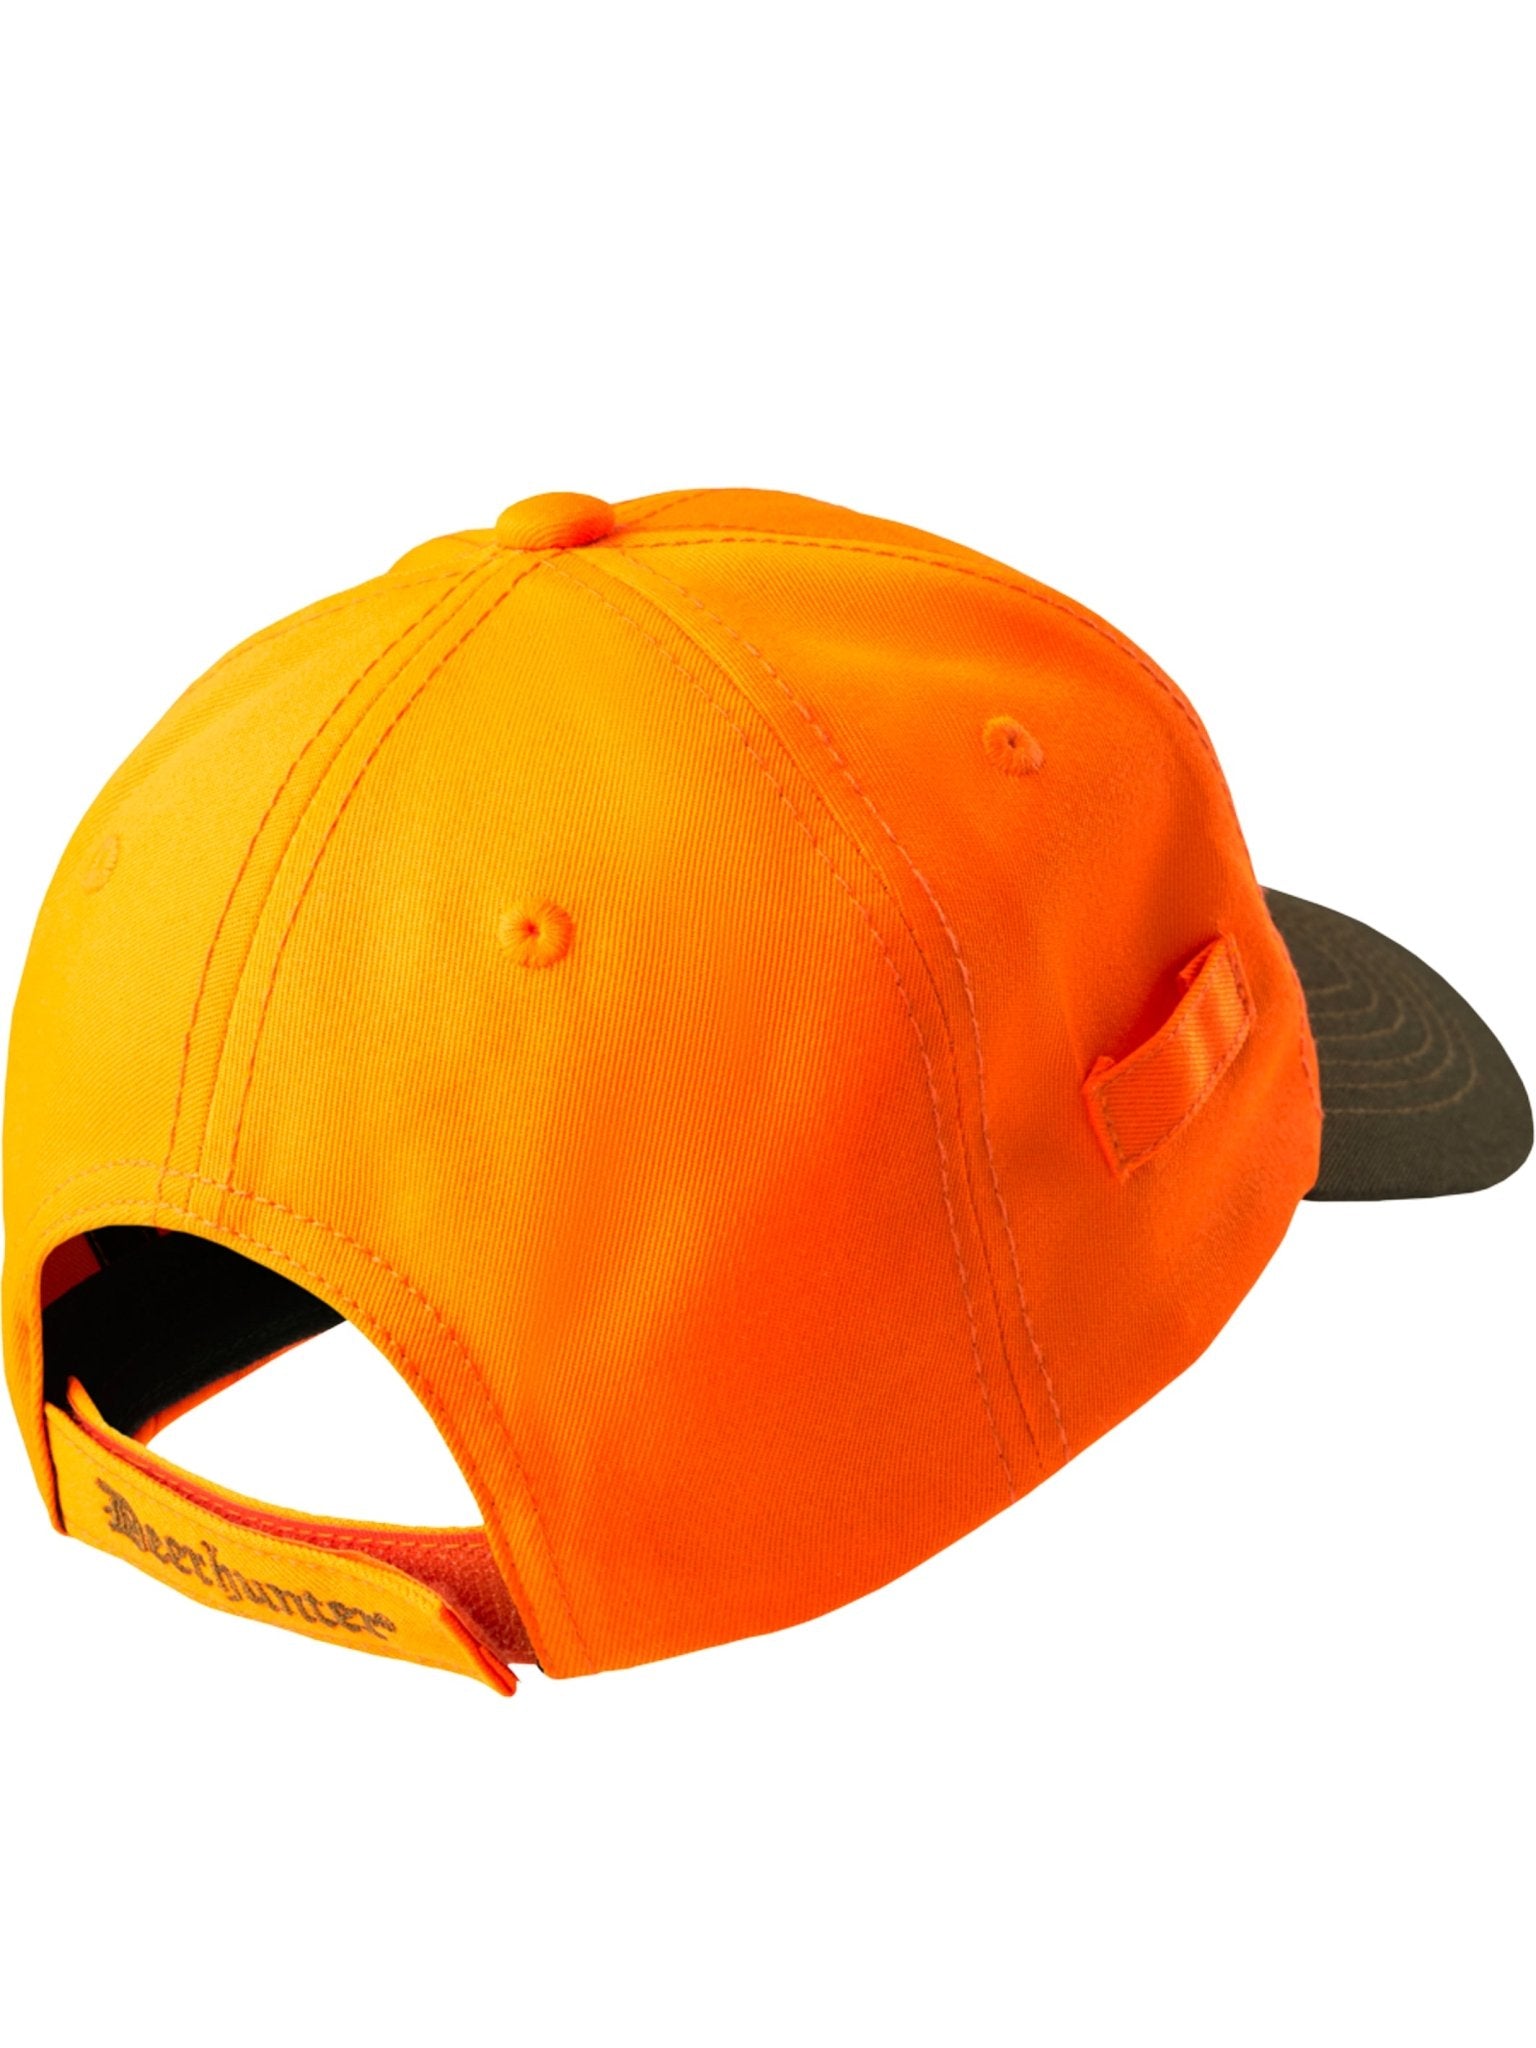 4elementsclothingDeerhunterDeerhunter - Bavaria Shield Baseball Cap adult adjustable peaked cap / hatHats6264-669